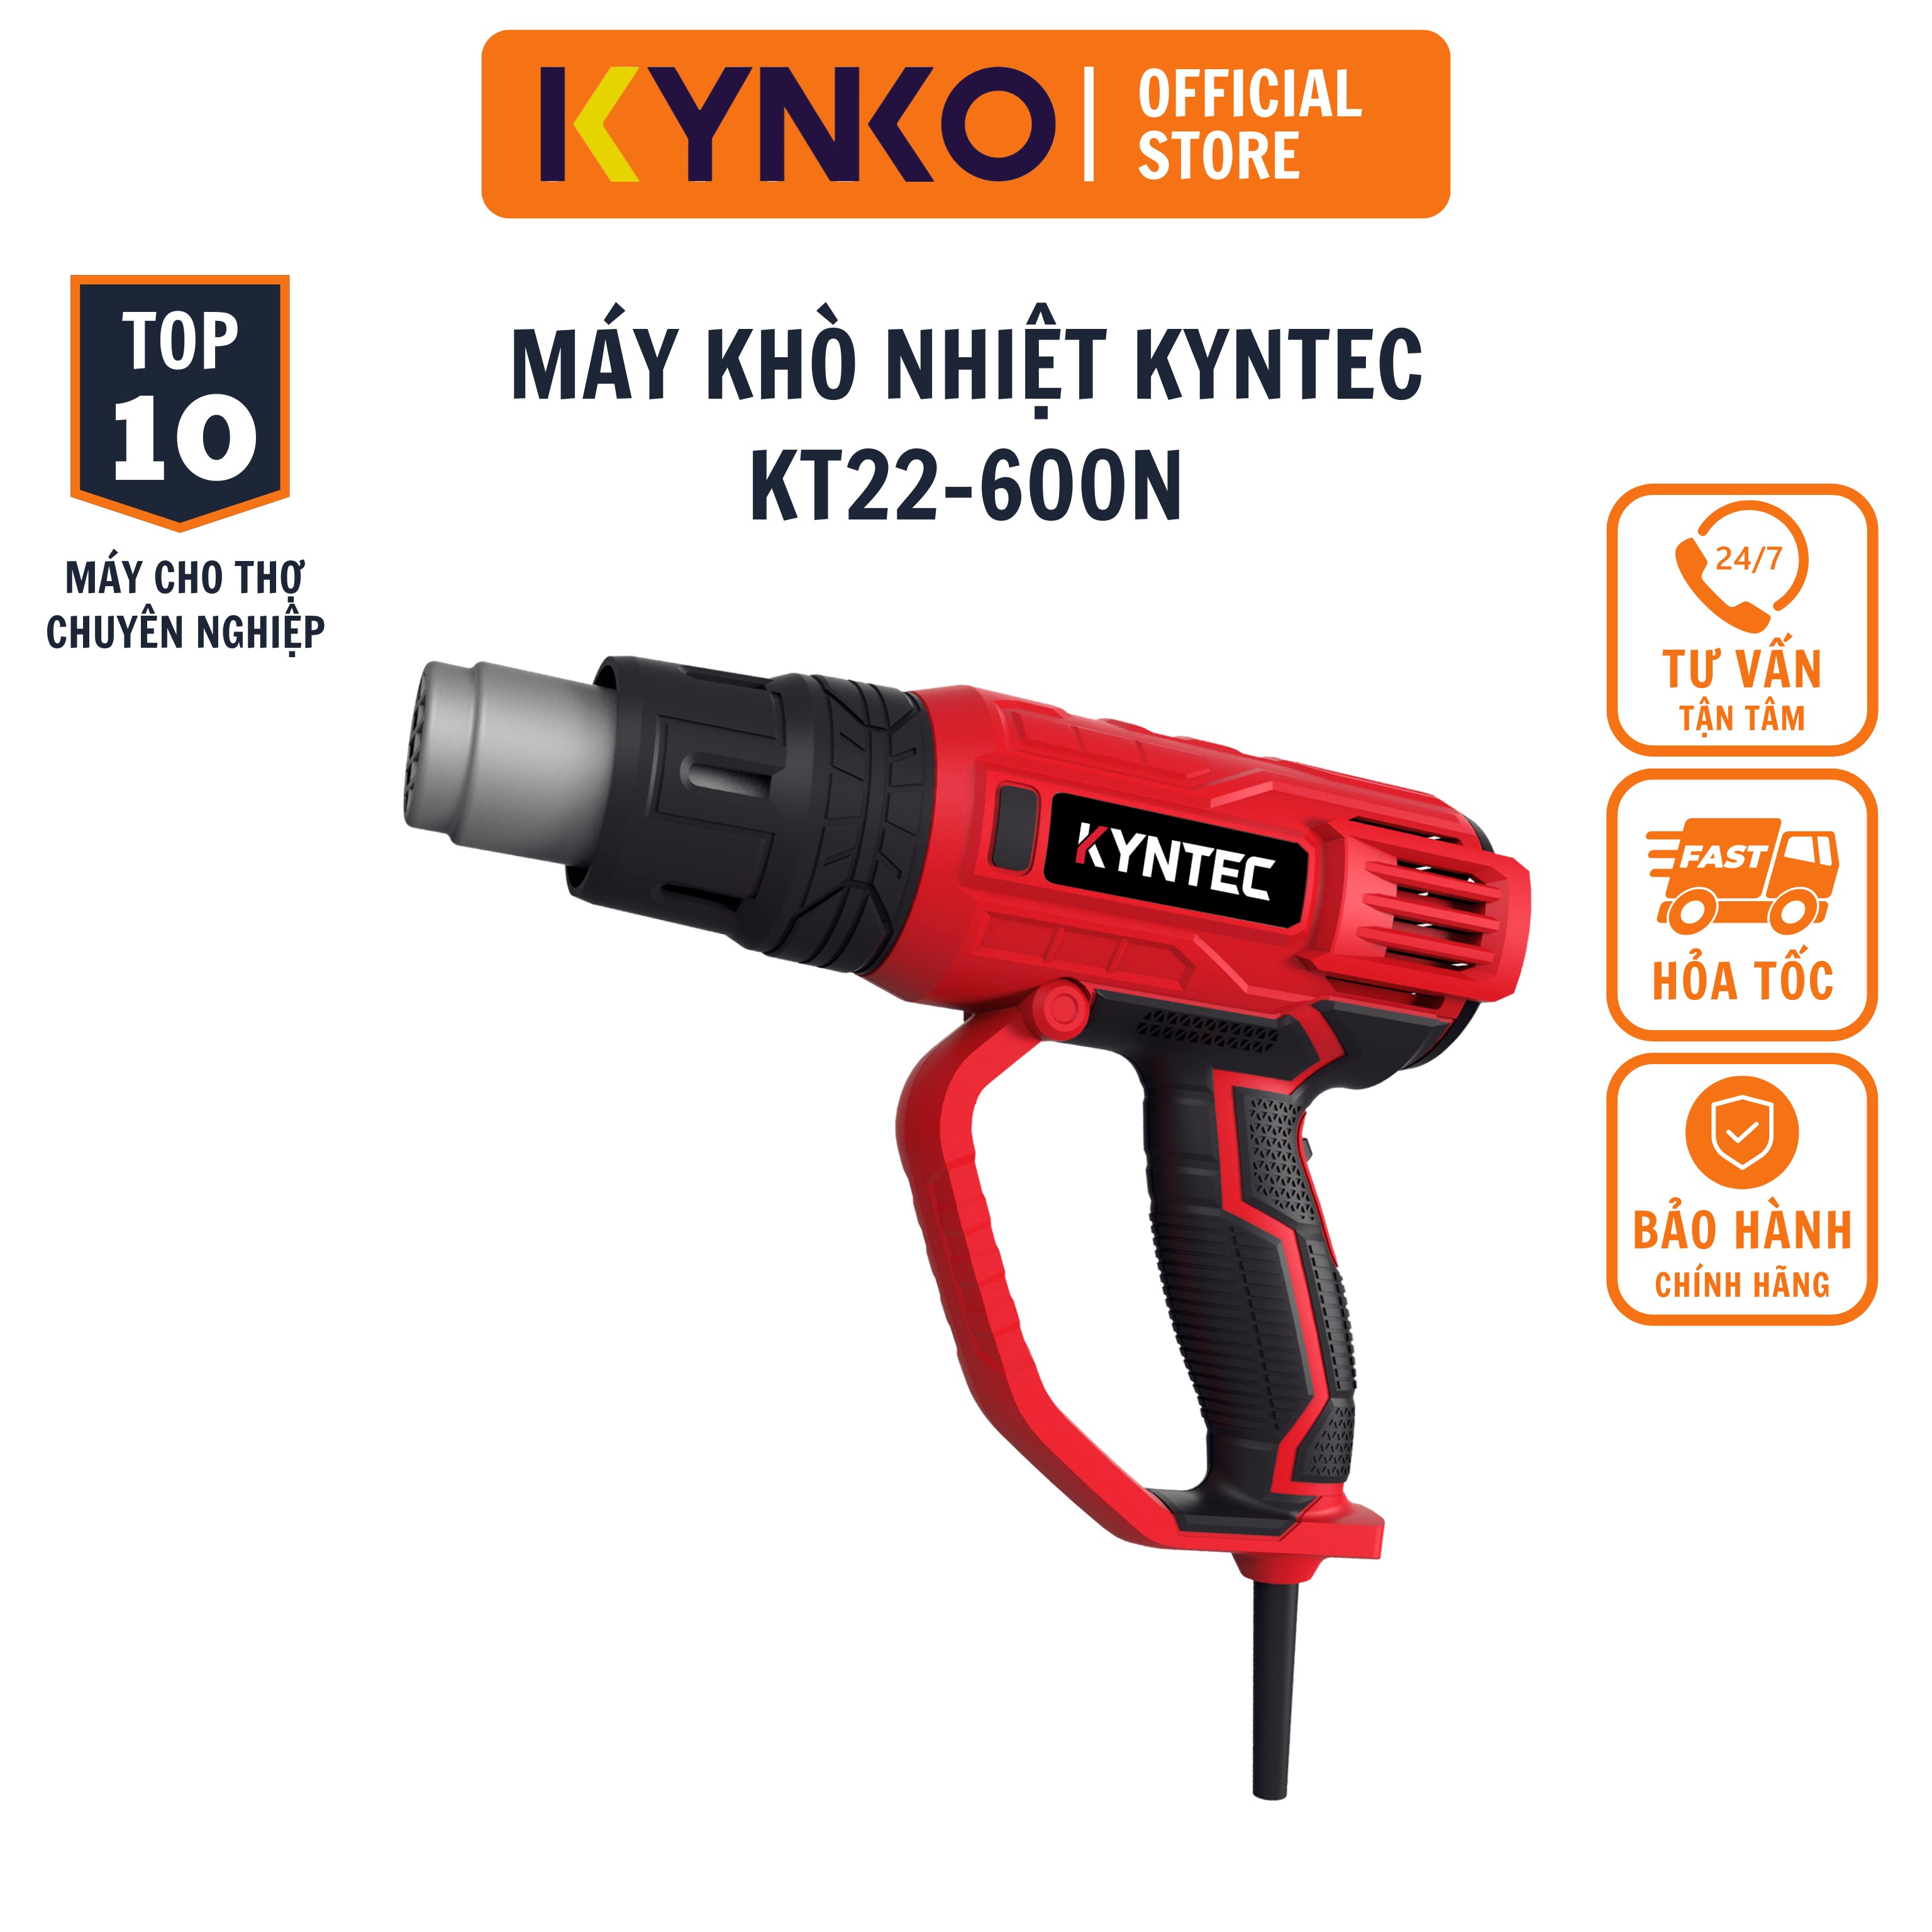 Máy khò nhiệt KYNKO KYNTEC KT22 - 600N chính hãng